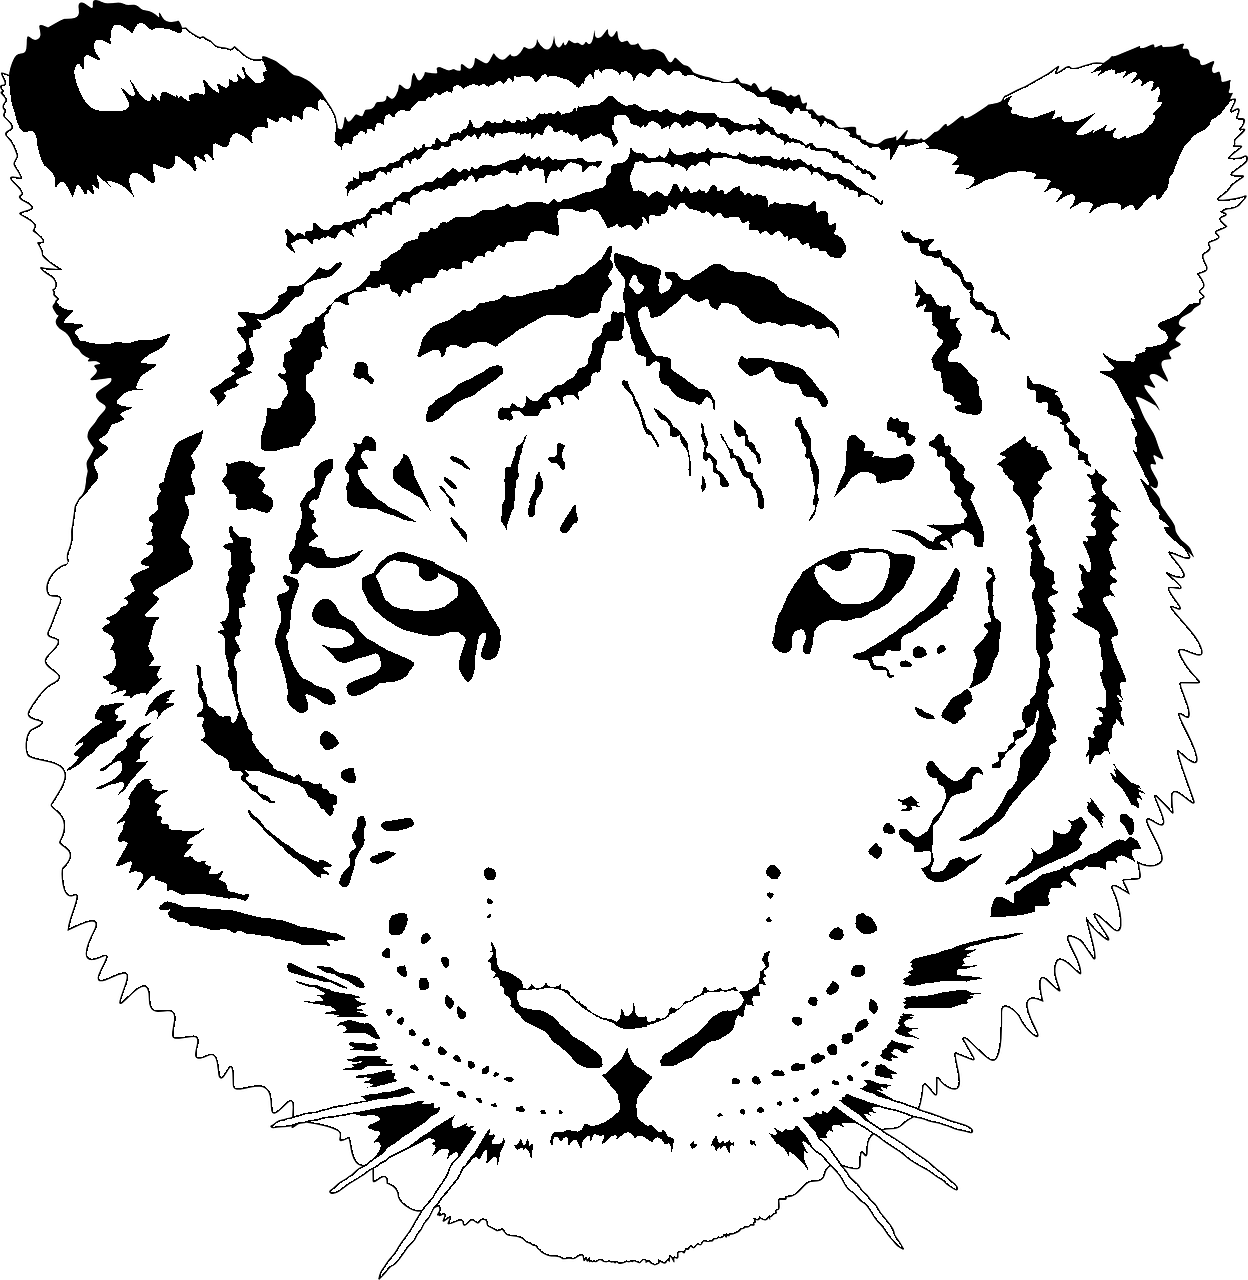 Dibujo para colorear de un tigre